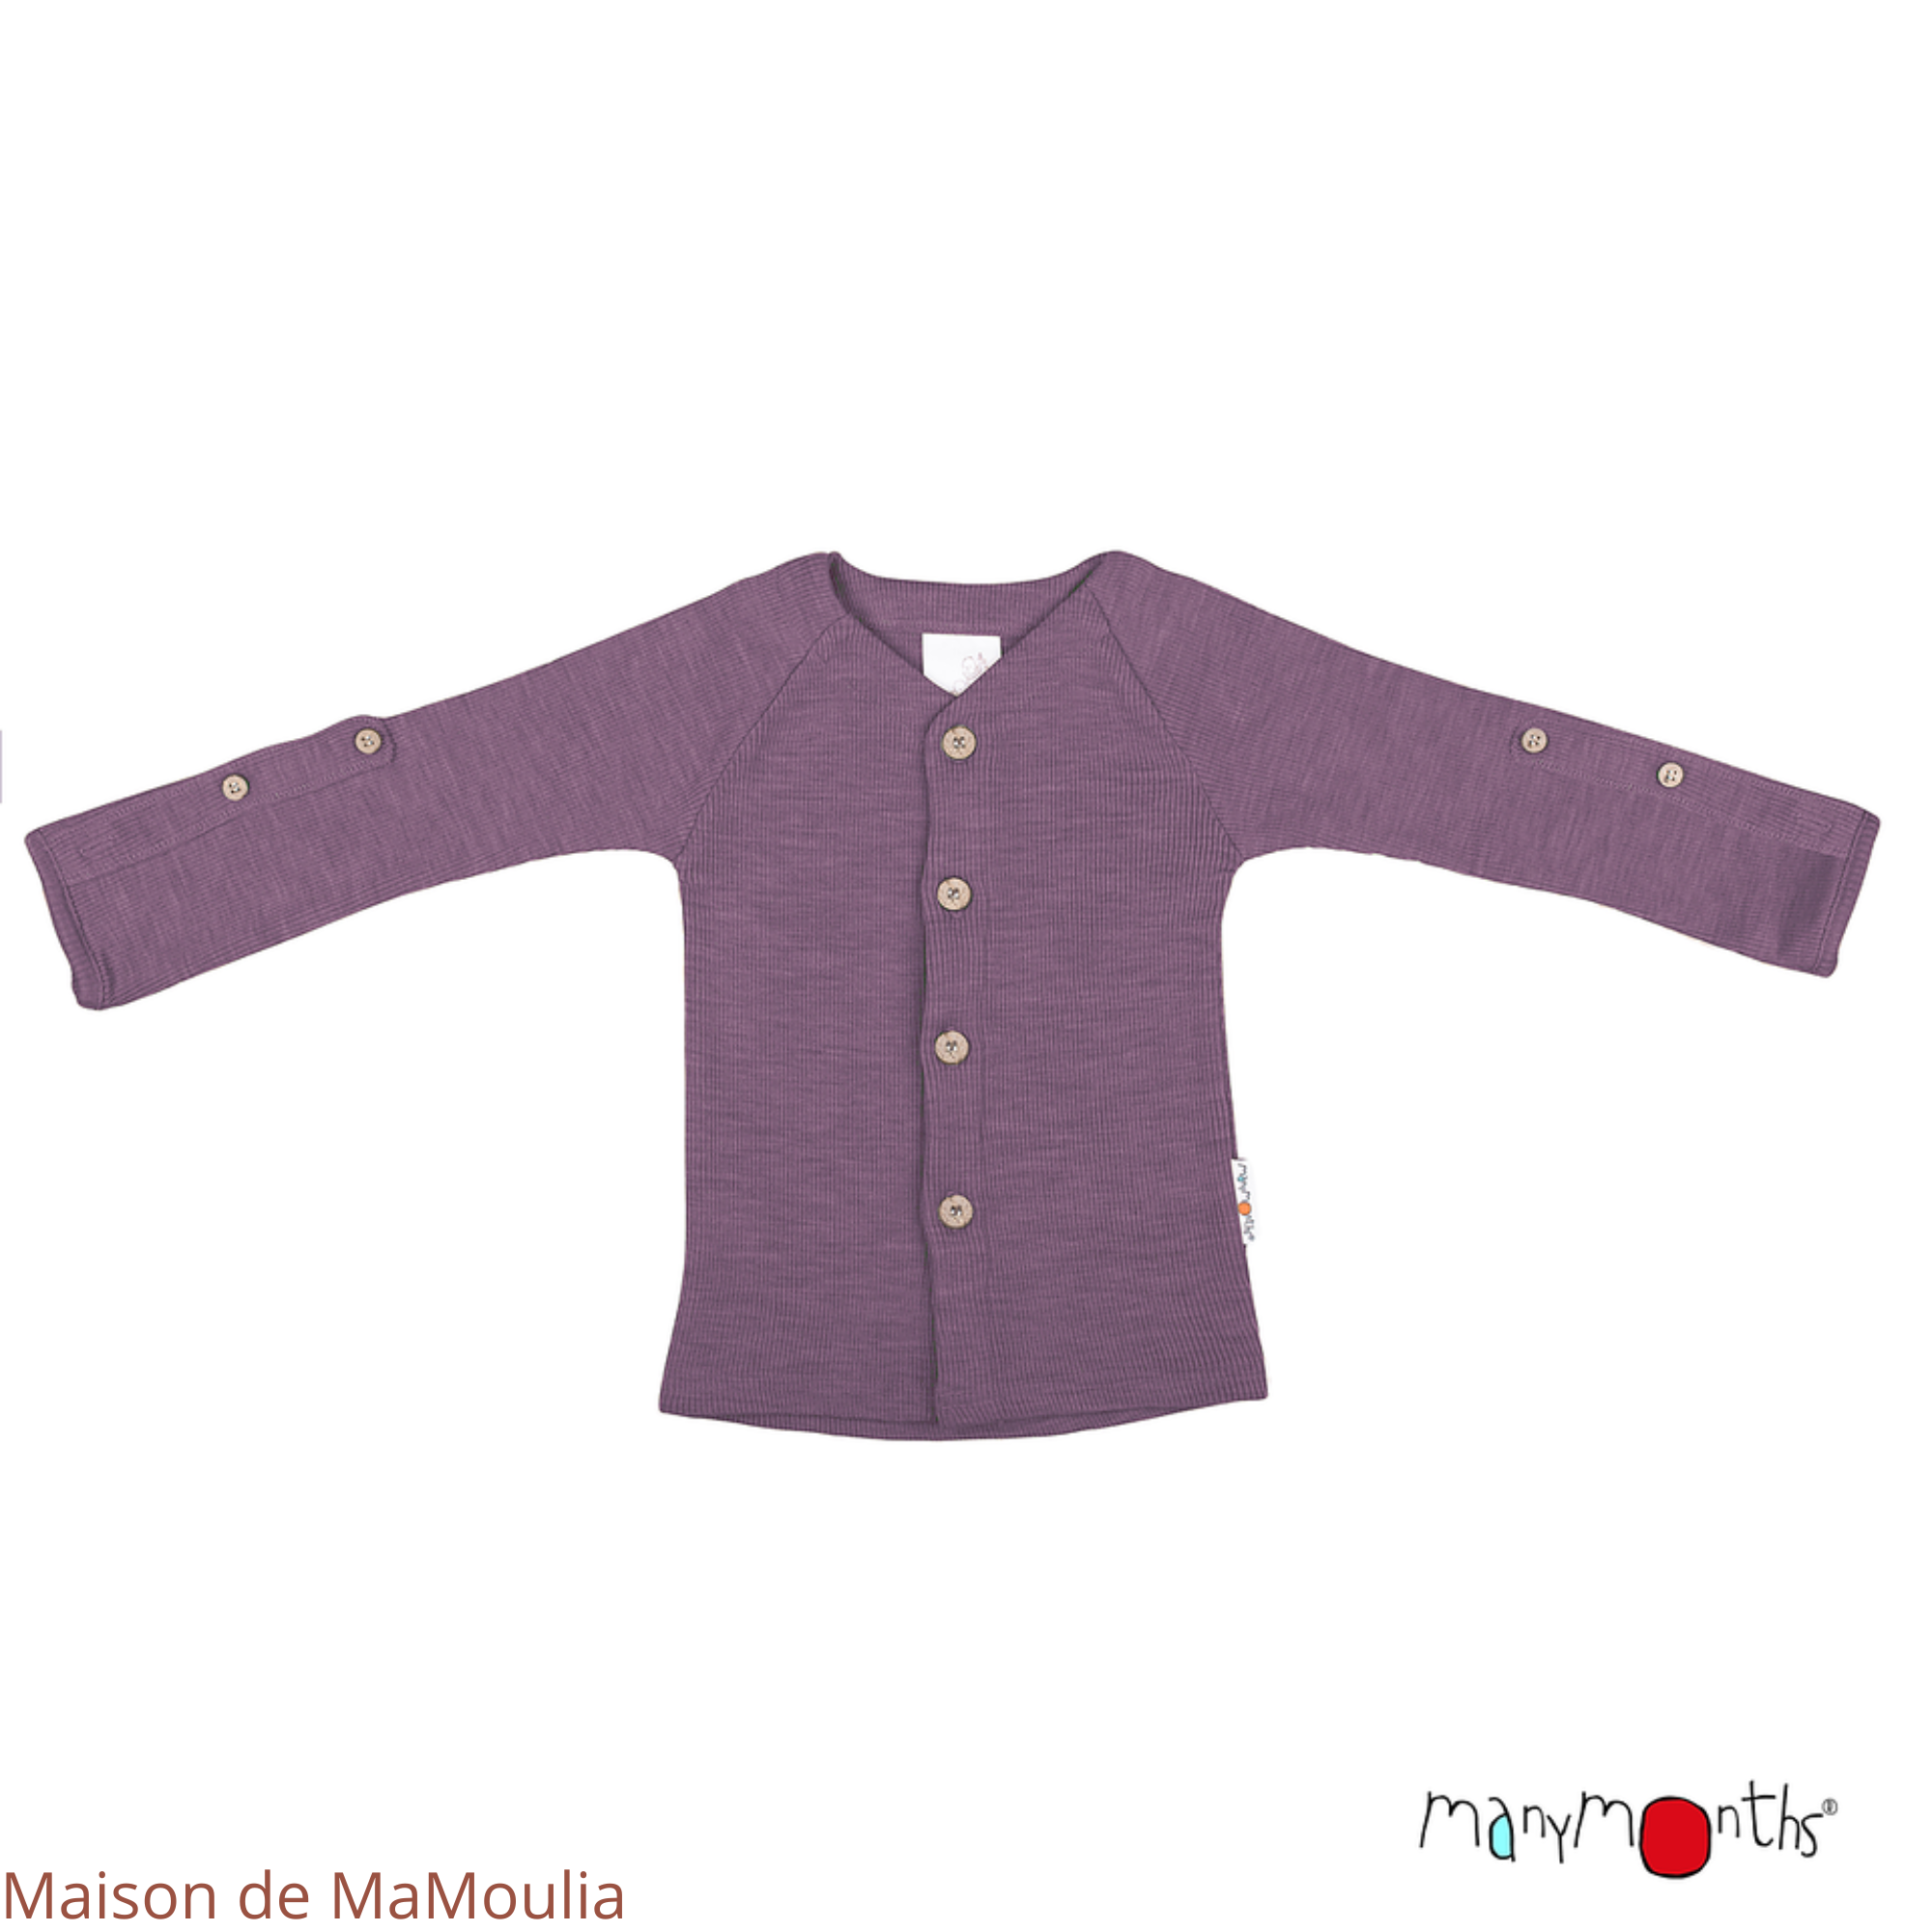 manymonths-gilet-cardigan-manches-longues-ajustable-evoluif-bebe-enfant-laine-merinos-maison-de-mamoulia-dustygrape-violet